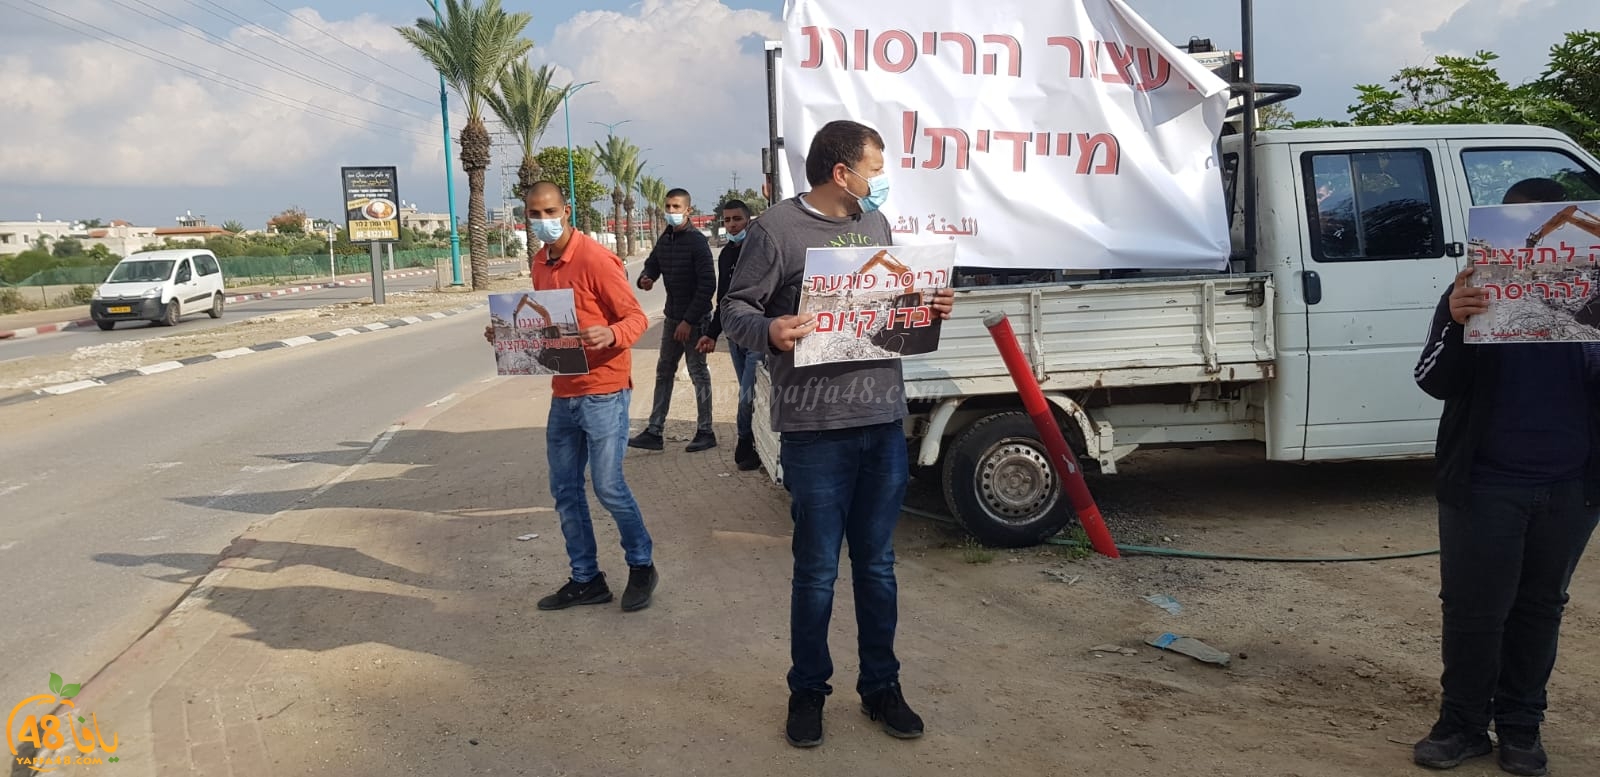  بالصور: وقفة احتجاجية في حي شنير باللد احتجاجاً على الهدم 